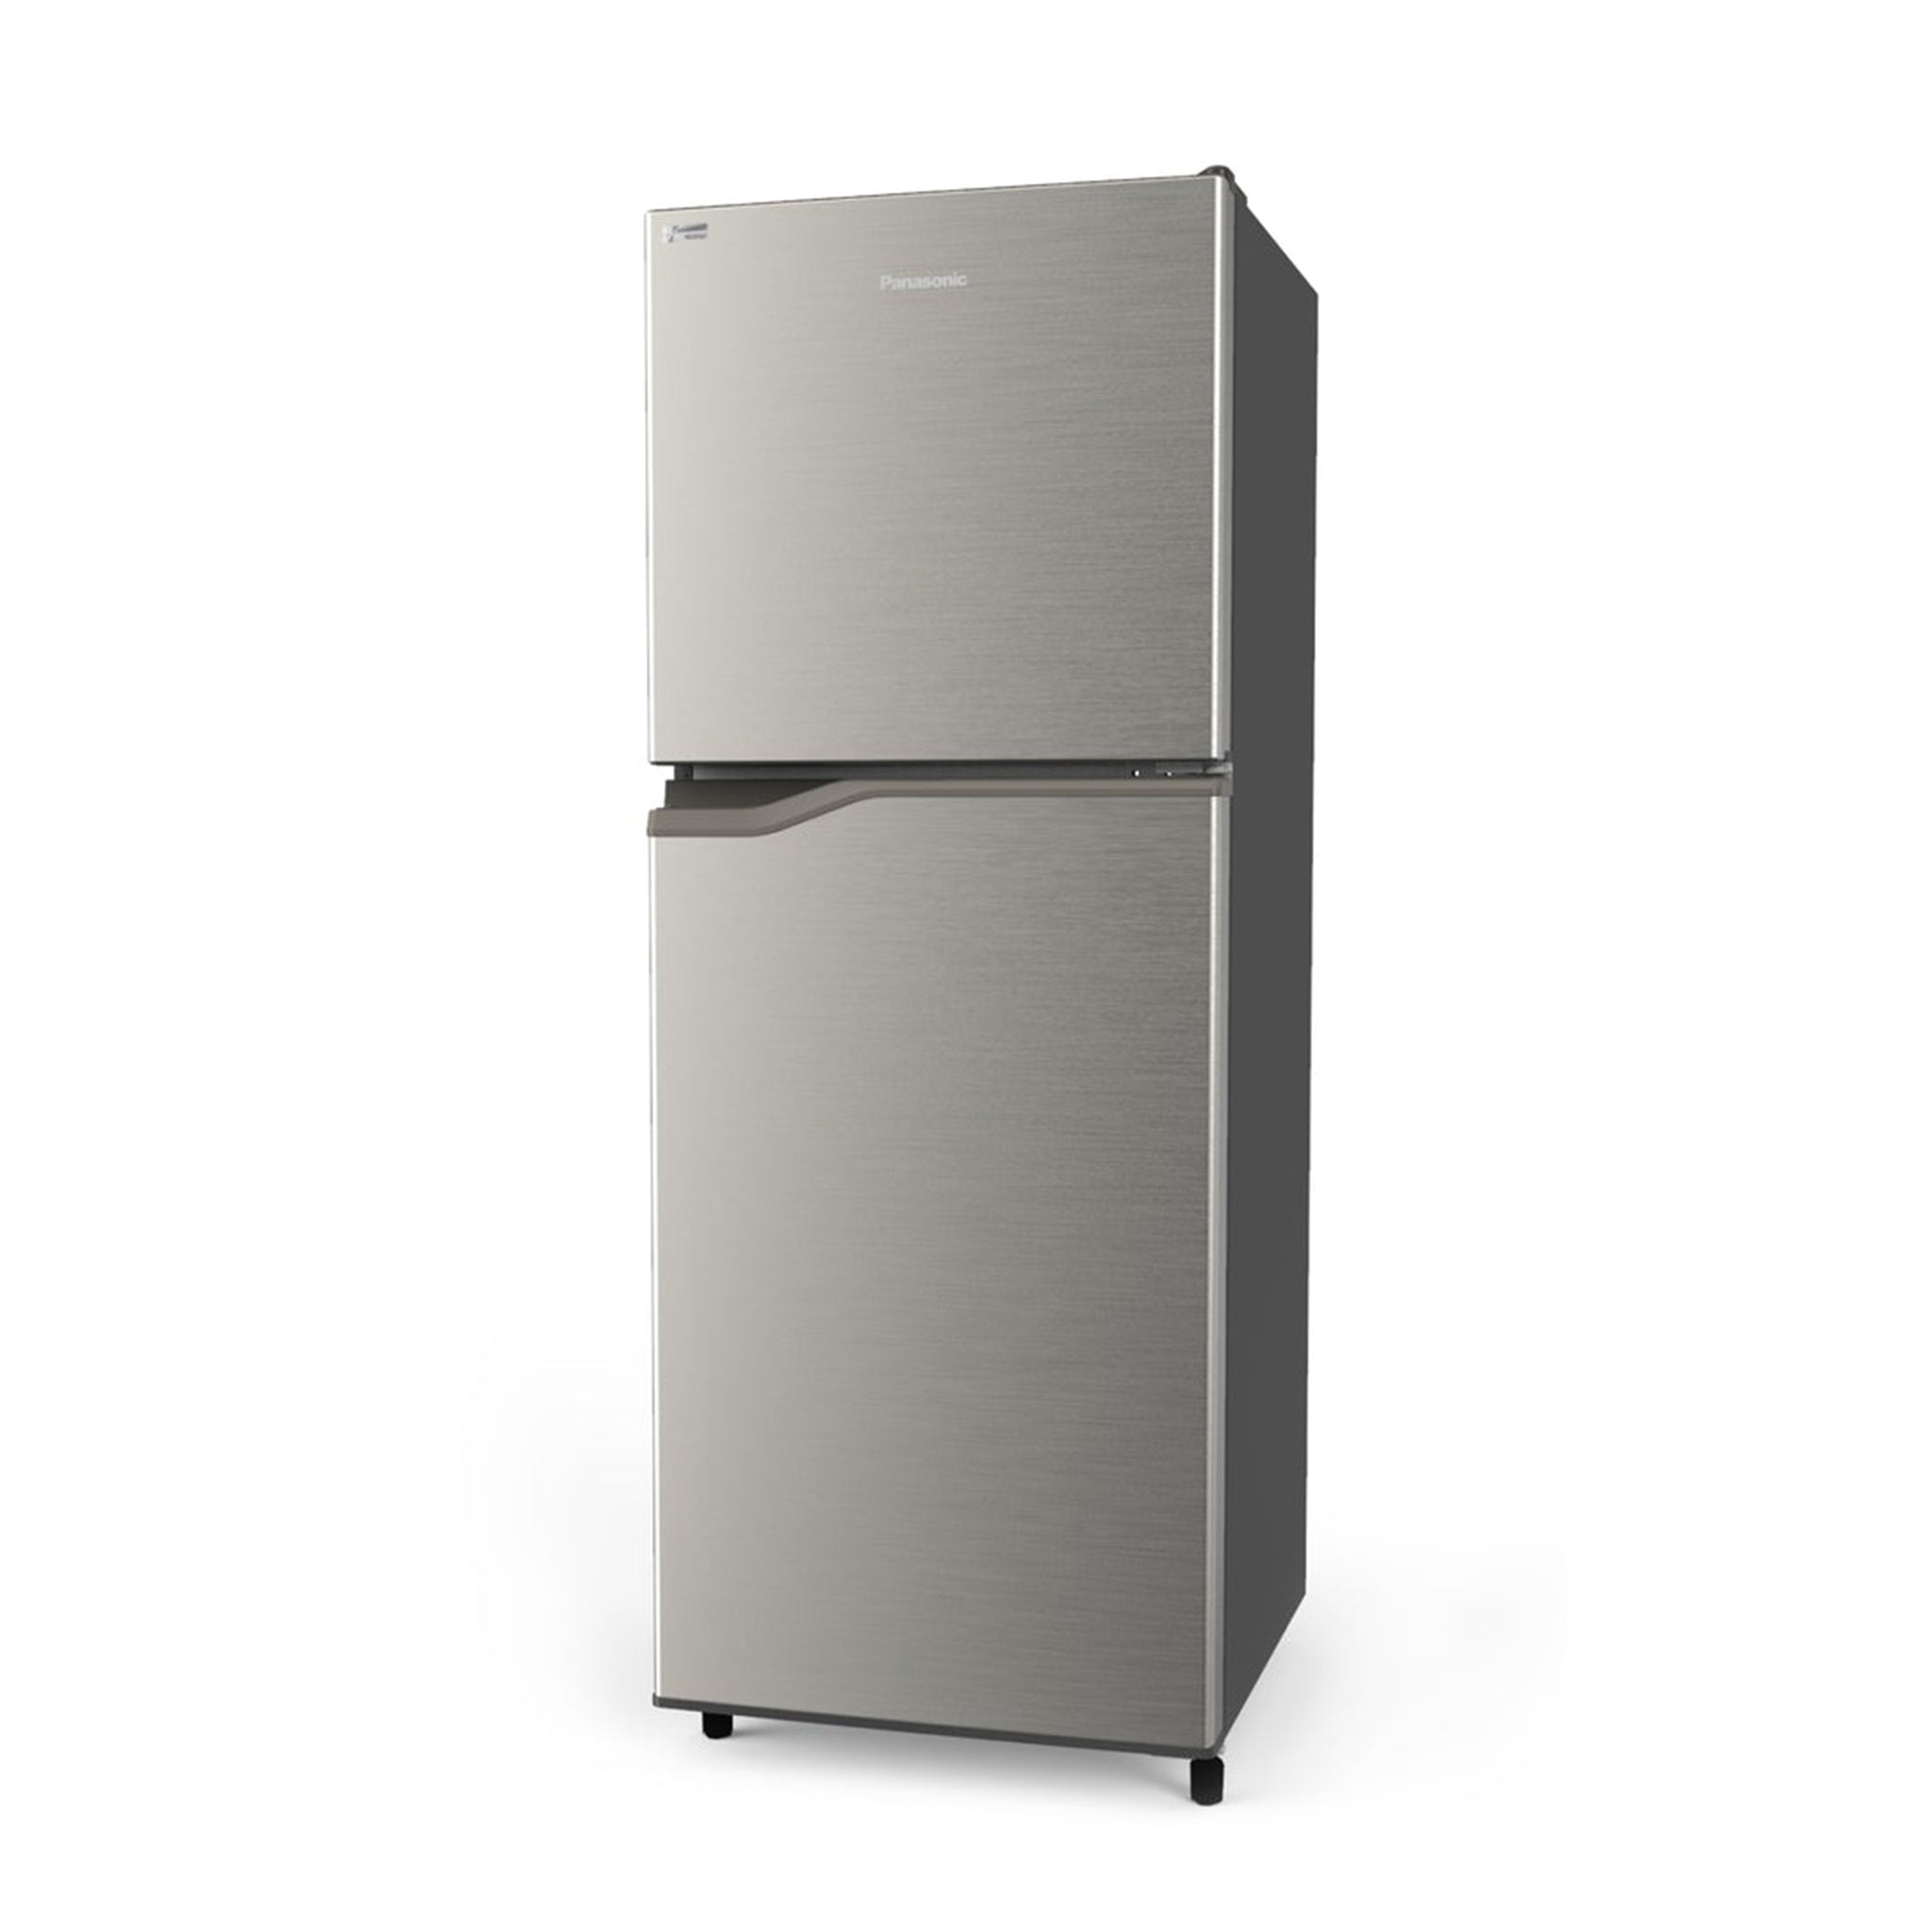 PANASONIC NR-BP260VS 2-Door Top Freezer Fridge No Frost Inverter Refrigerator Panasonic